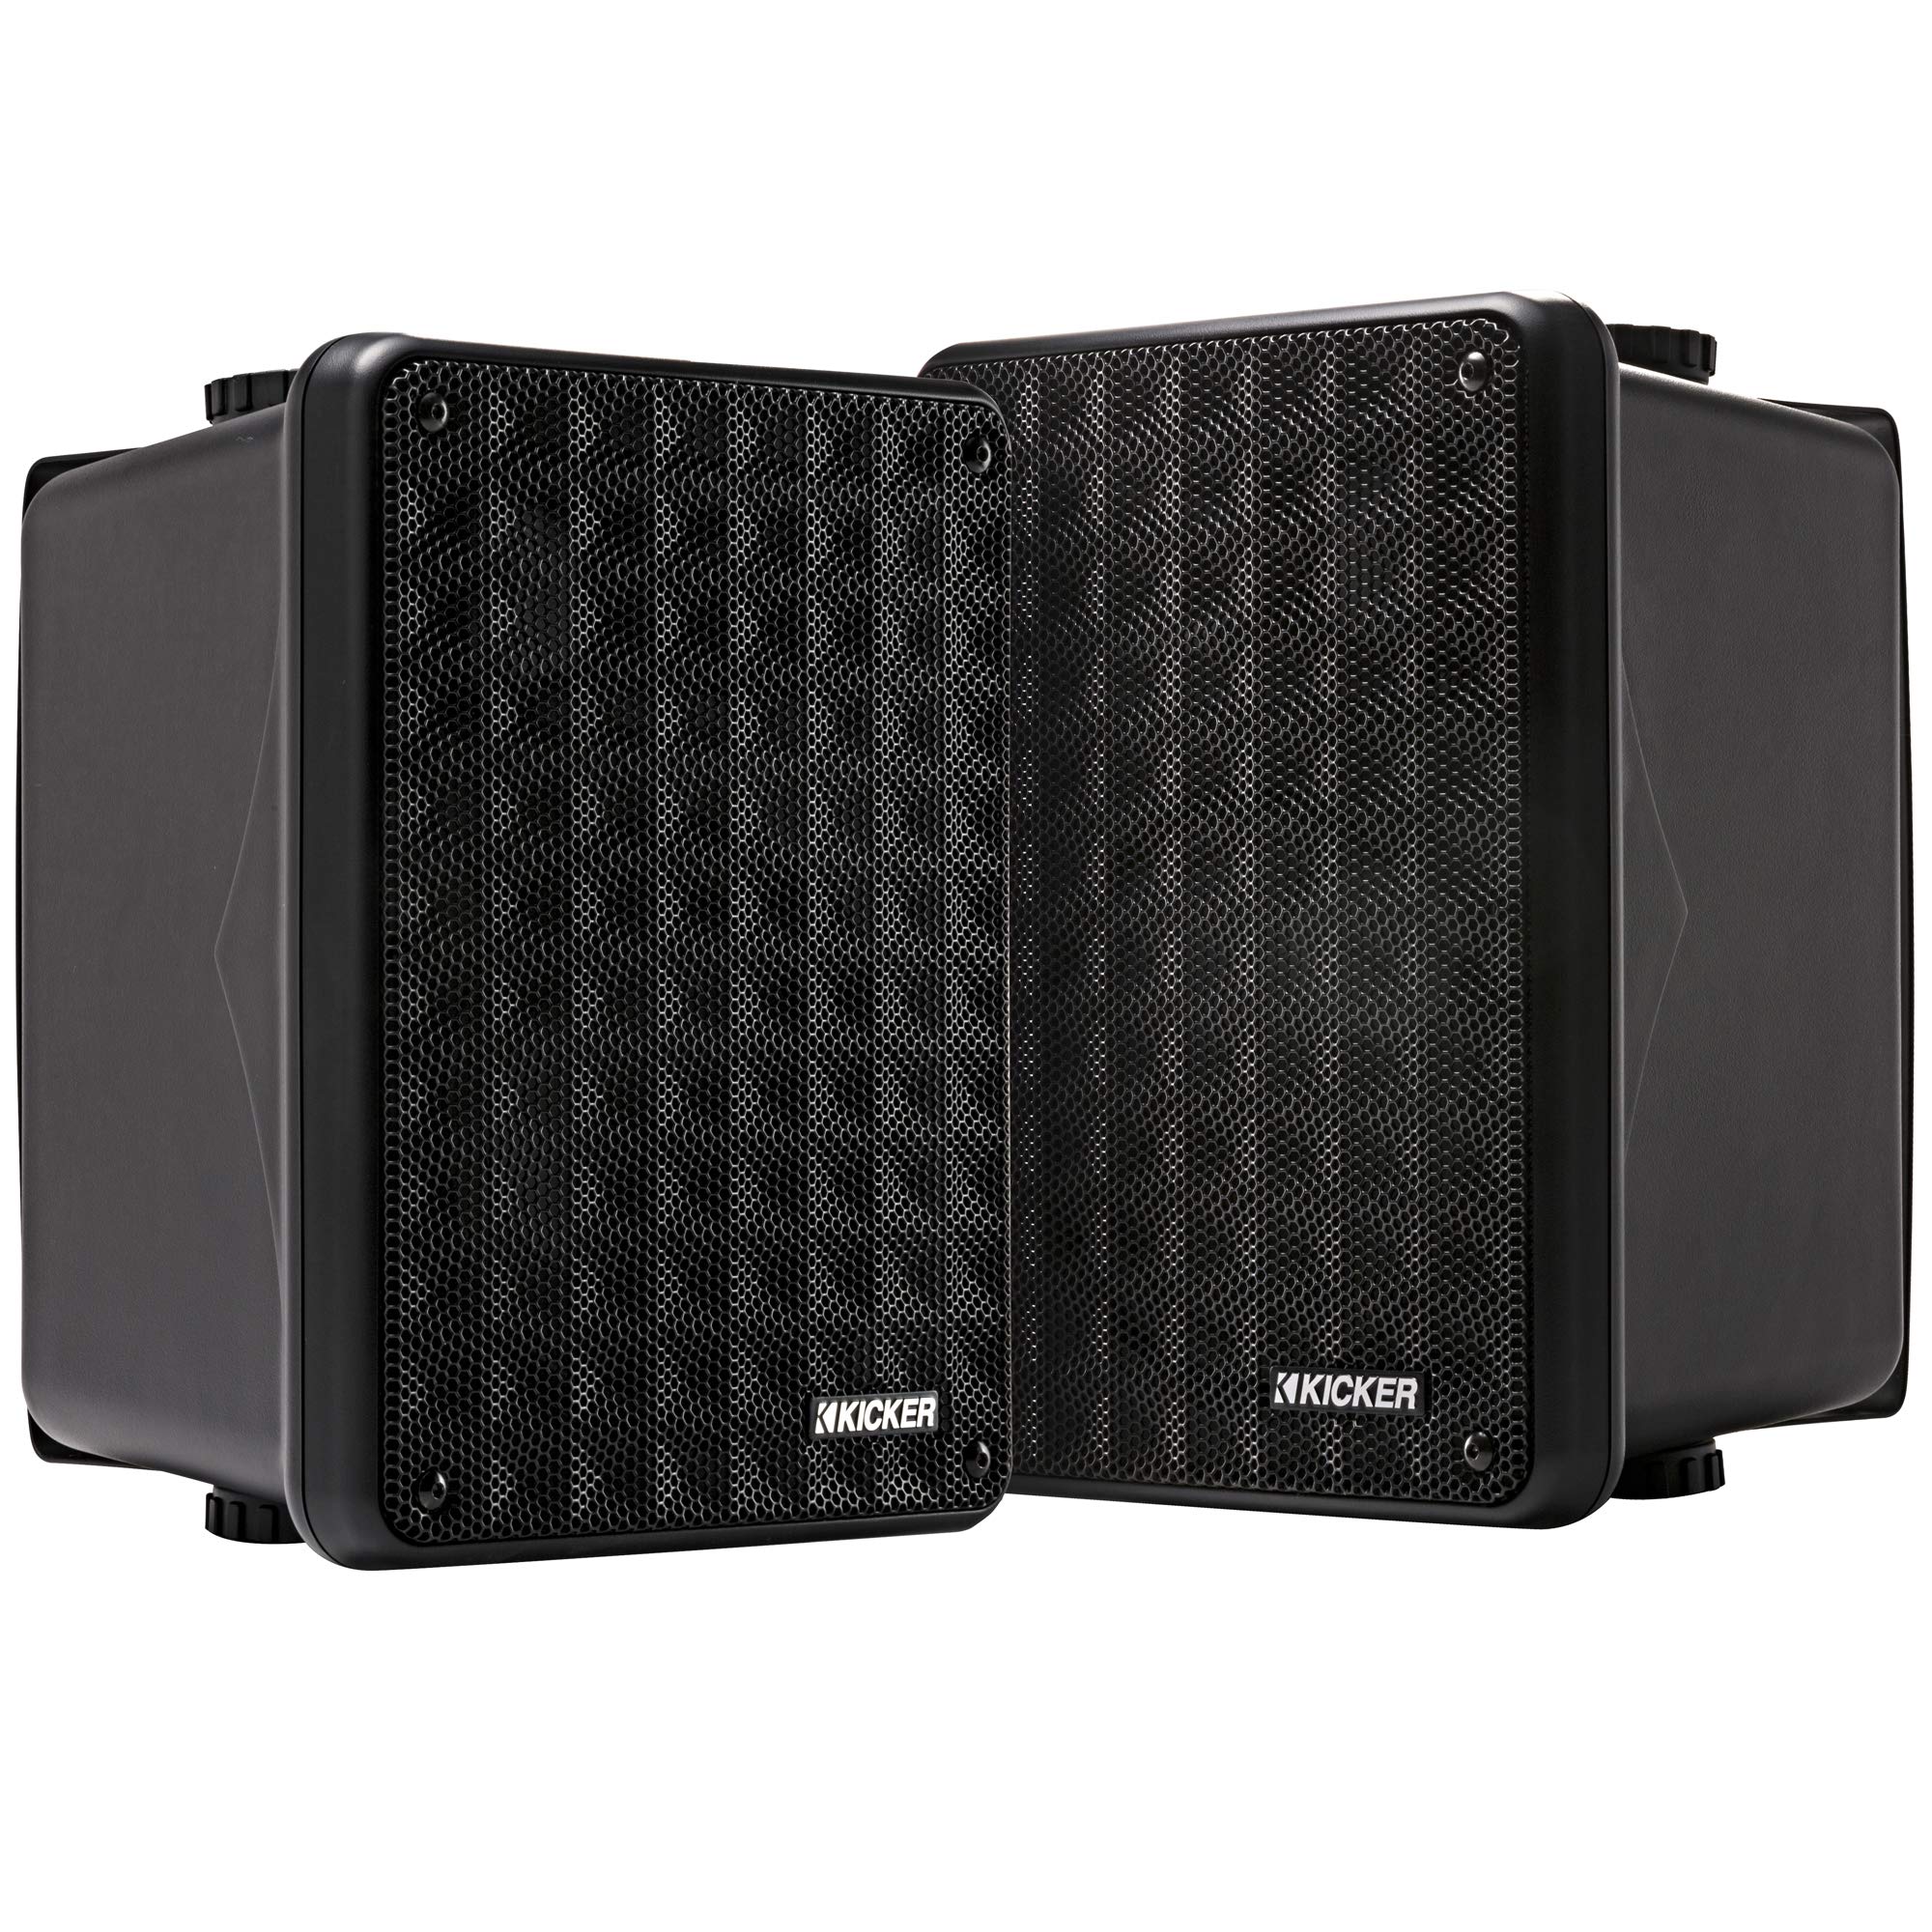 KICKER KB6B 2-Way Full Range Indoor Outdoor Speakers